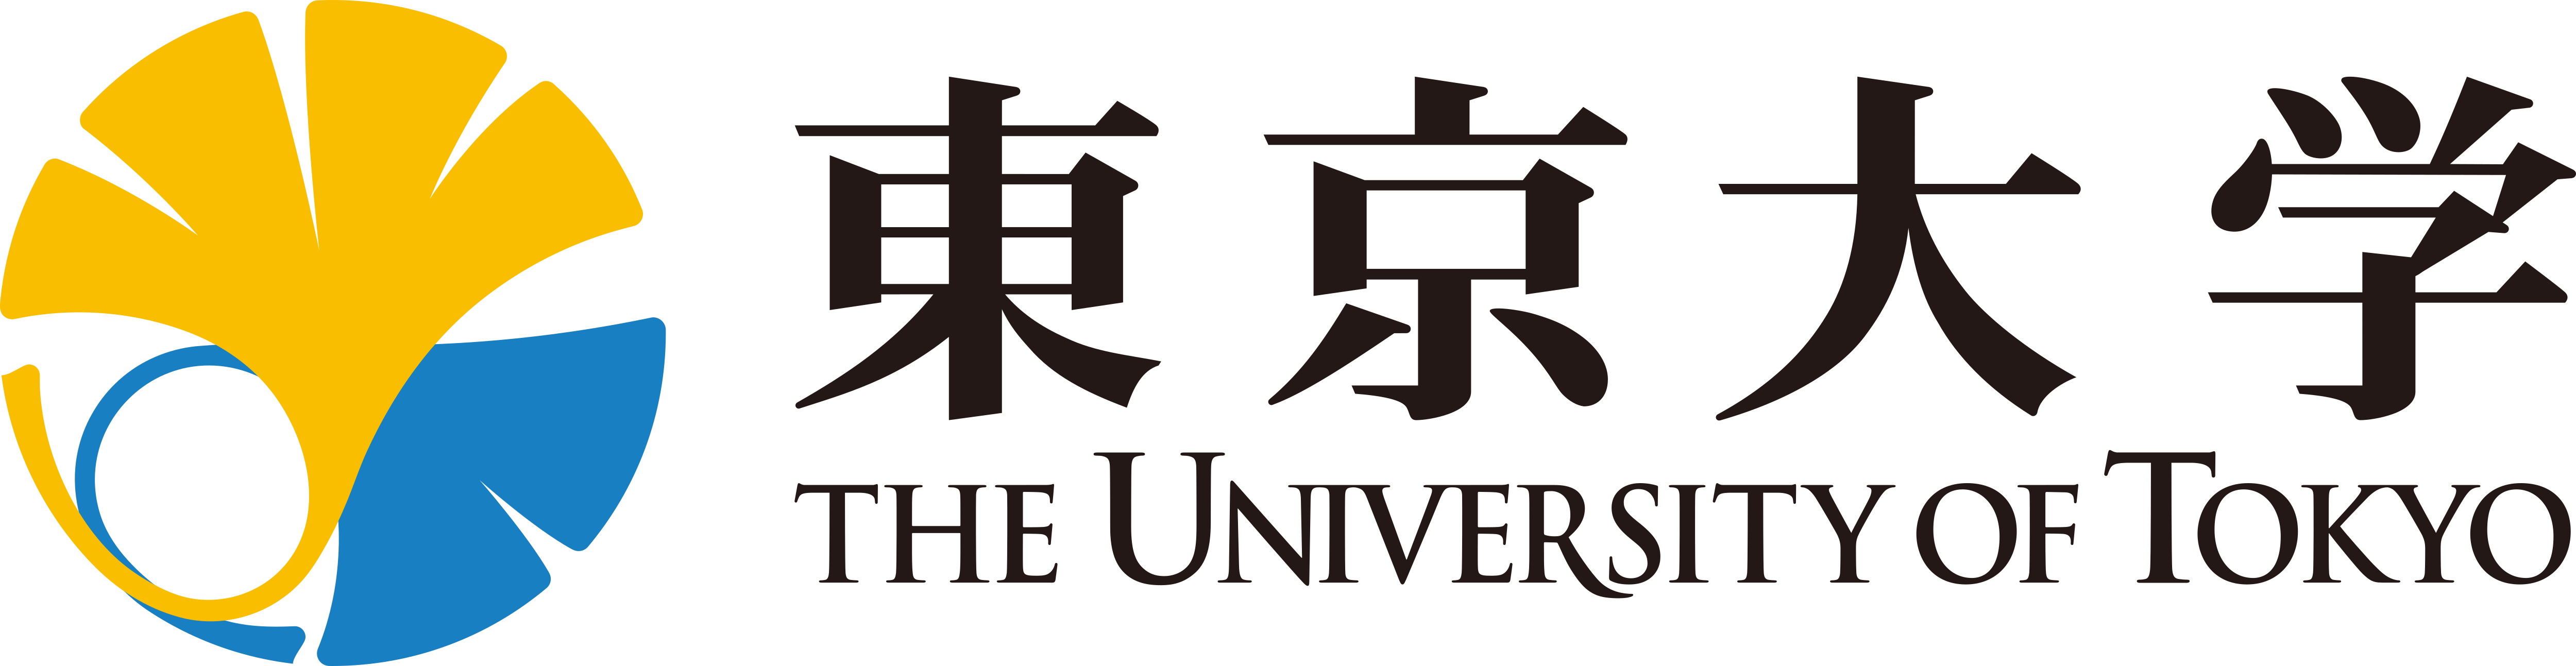 University of Tokyo – Last ned logoer